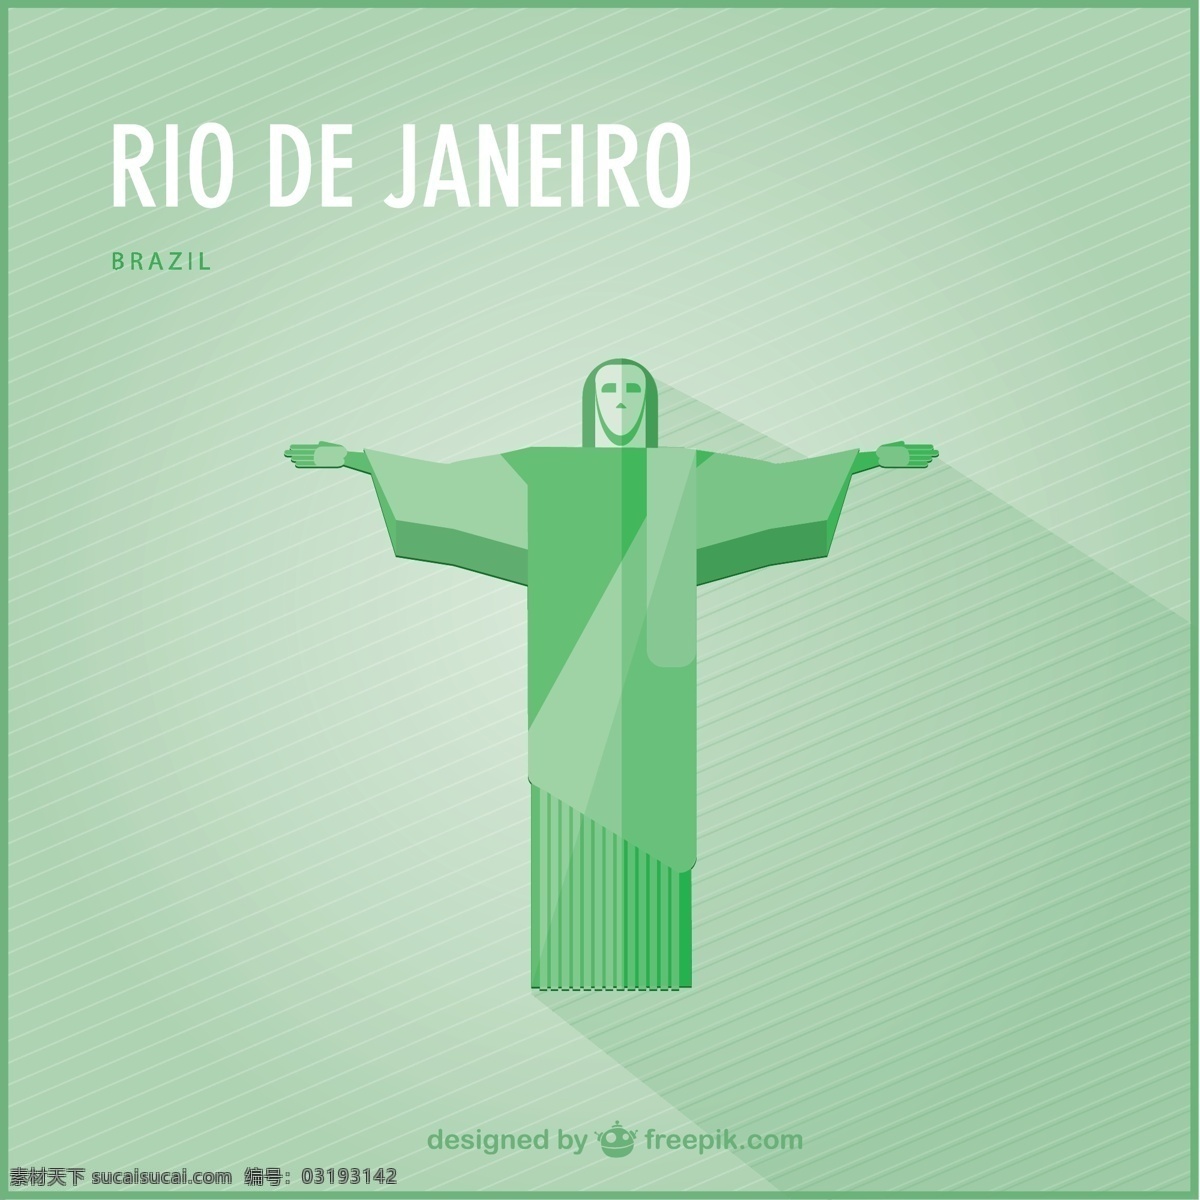 里约热内卢 基督 救世主 城市 世界 模板 平面 平面设计 假日 位置 元素 旅游 巴西 设计元素 图形 符号 国家 绿色